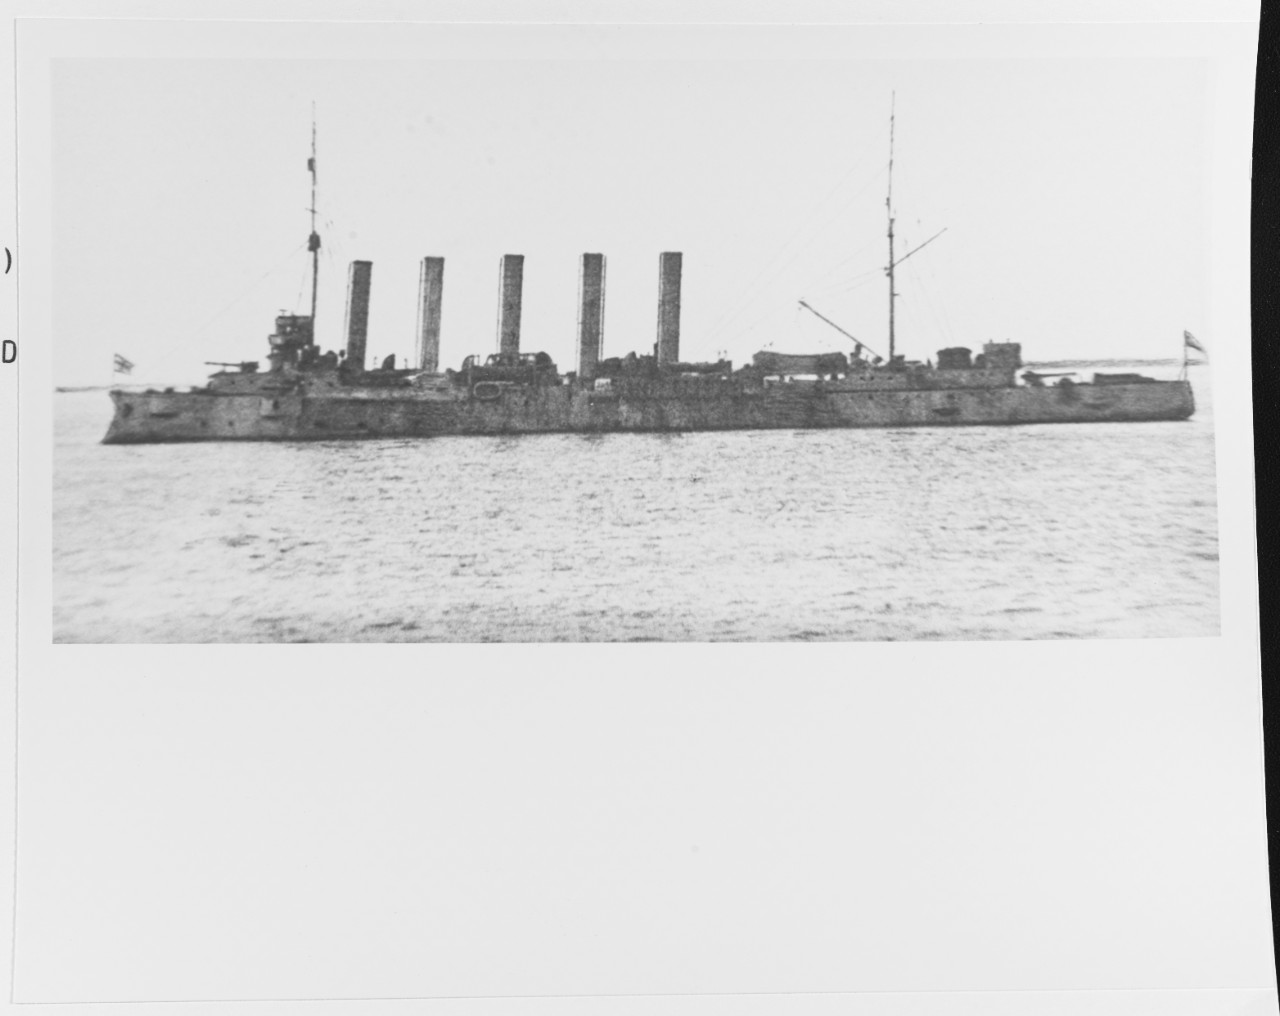 GLORY IV (British Protected Cruiser, 1900-ca. 1920)